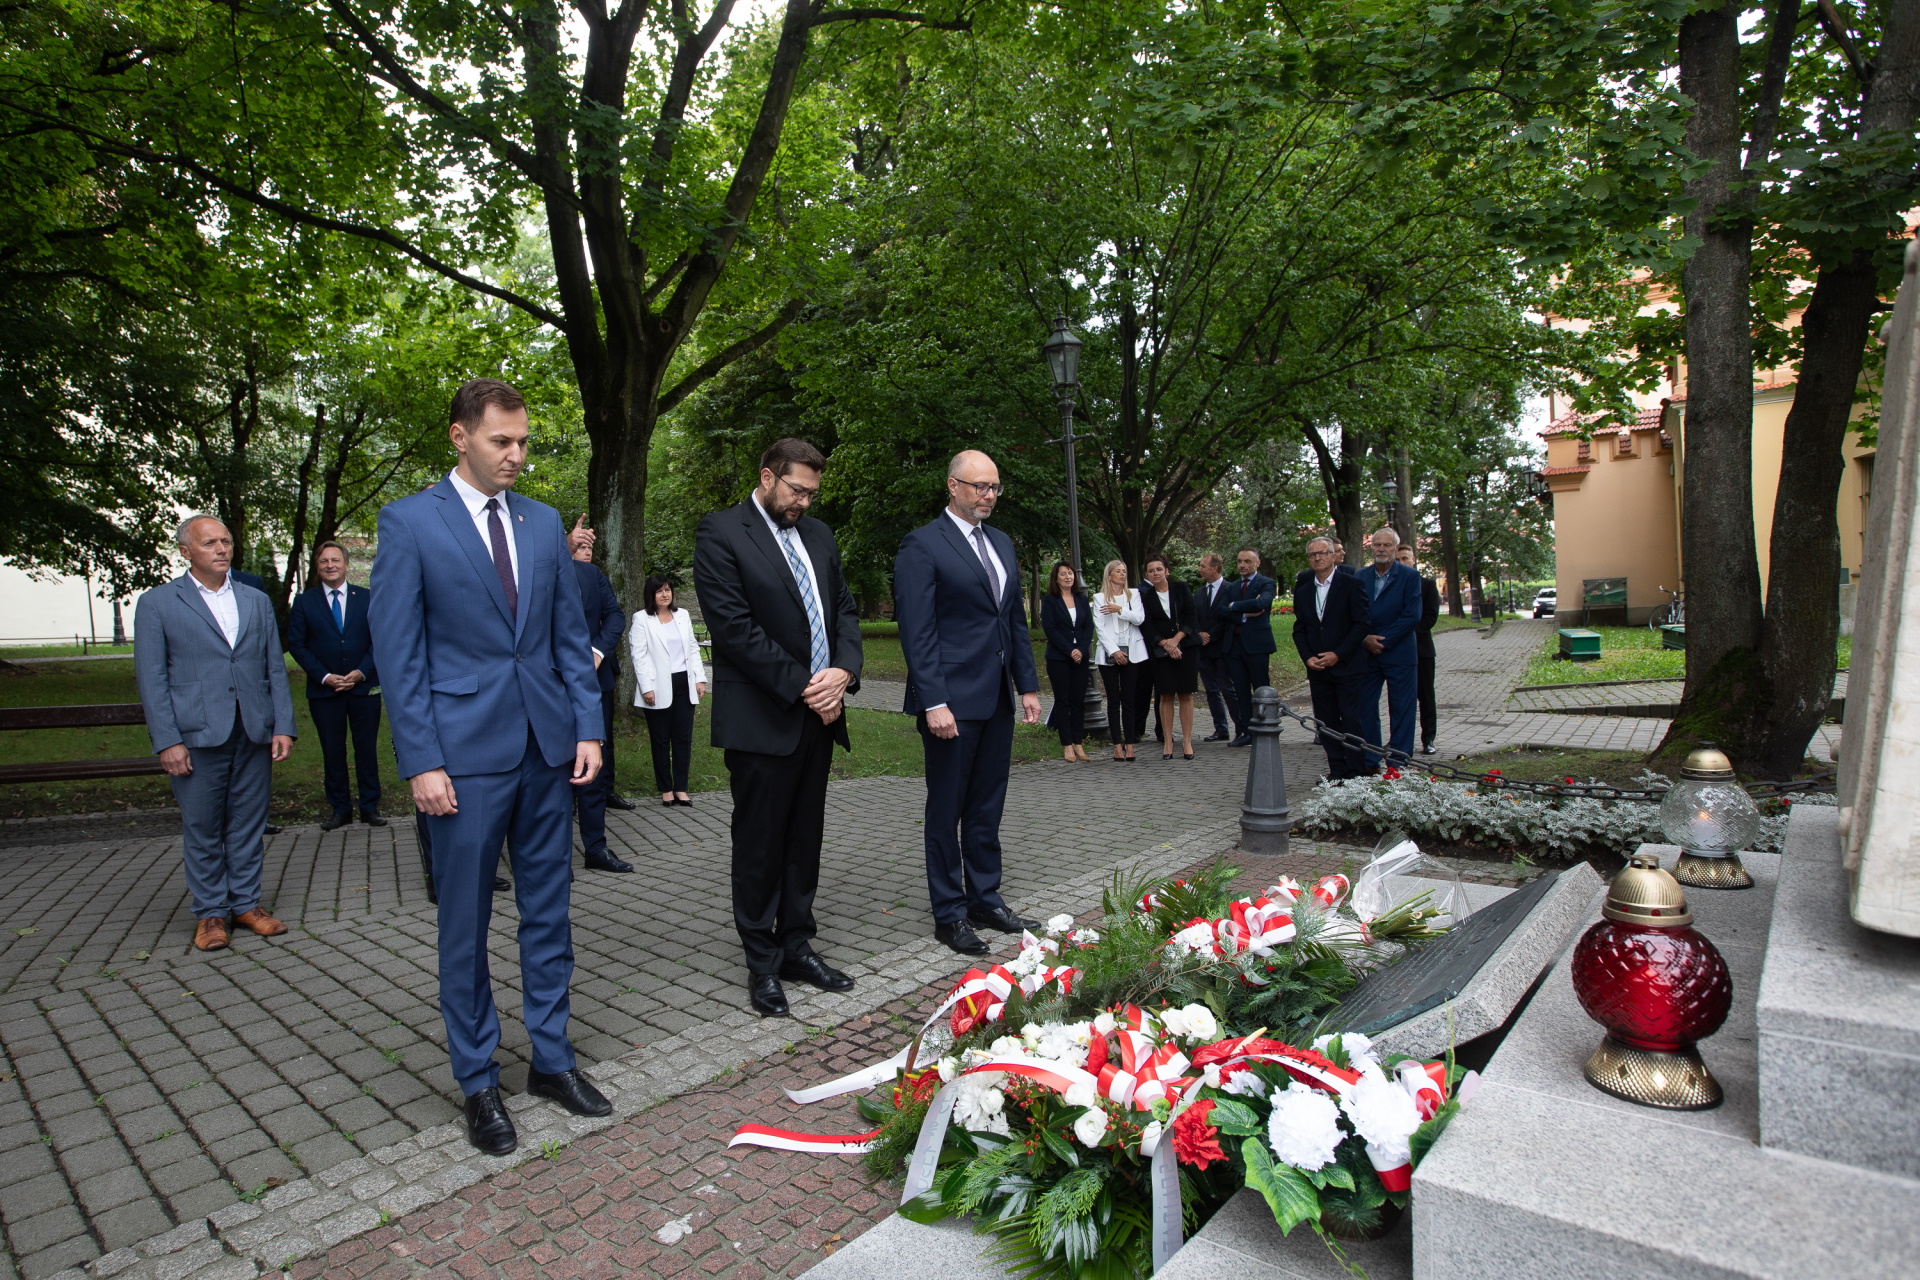 Delegacja Kopalni Soli "Wieliczka" składa kwiaty przy pomniku na wielickich plantach